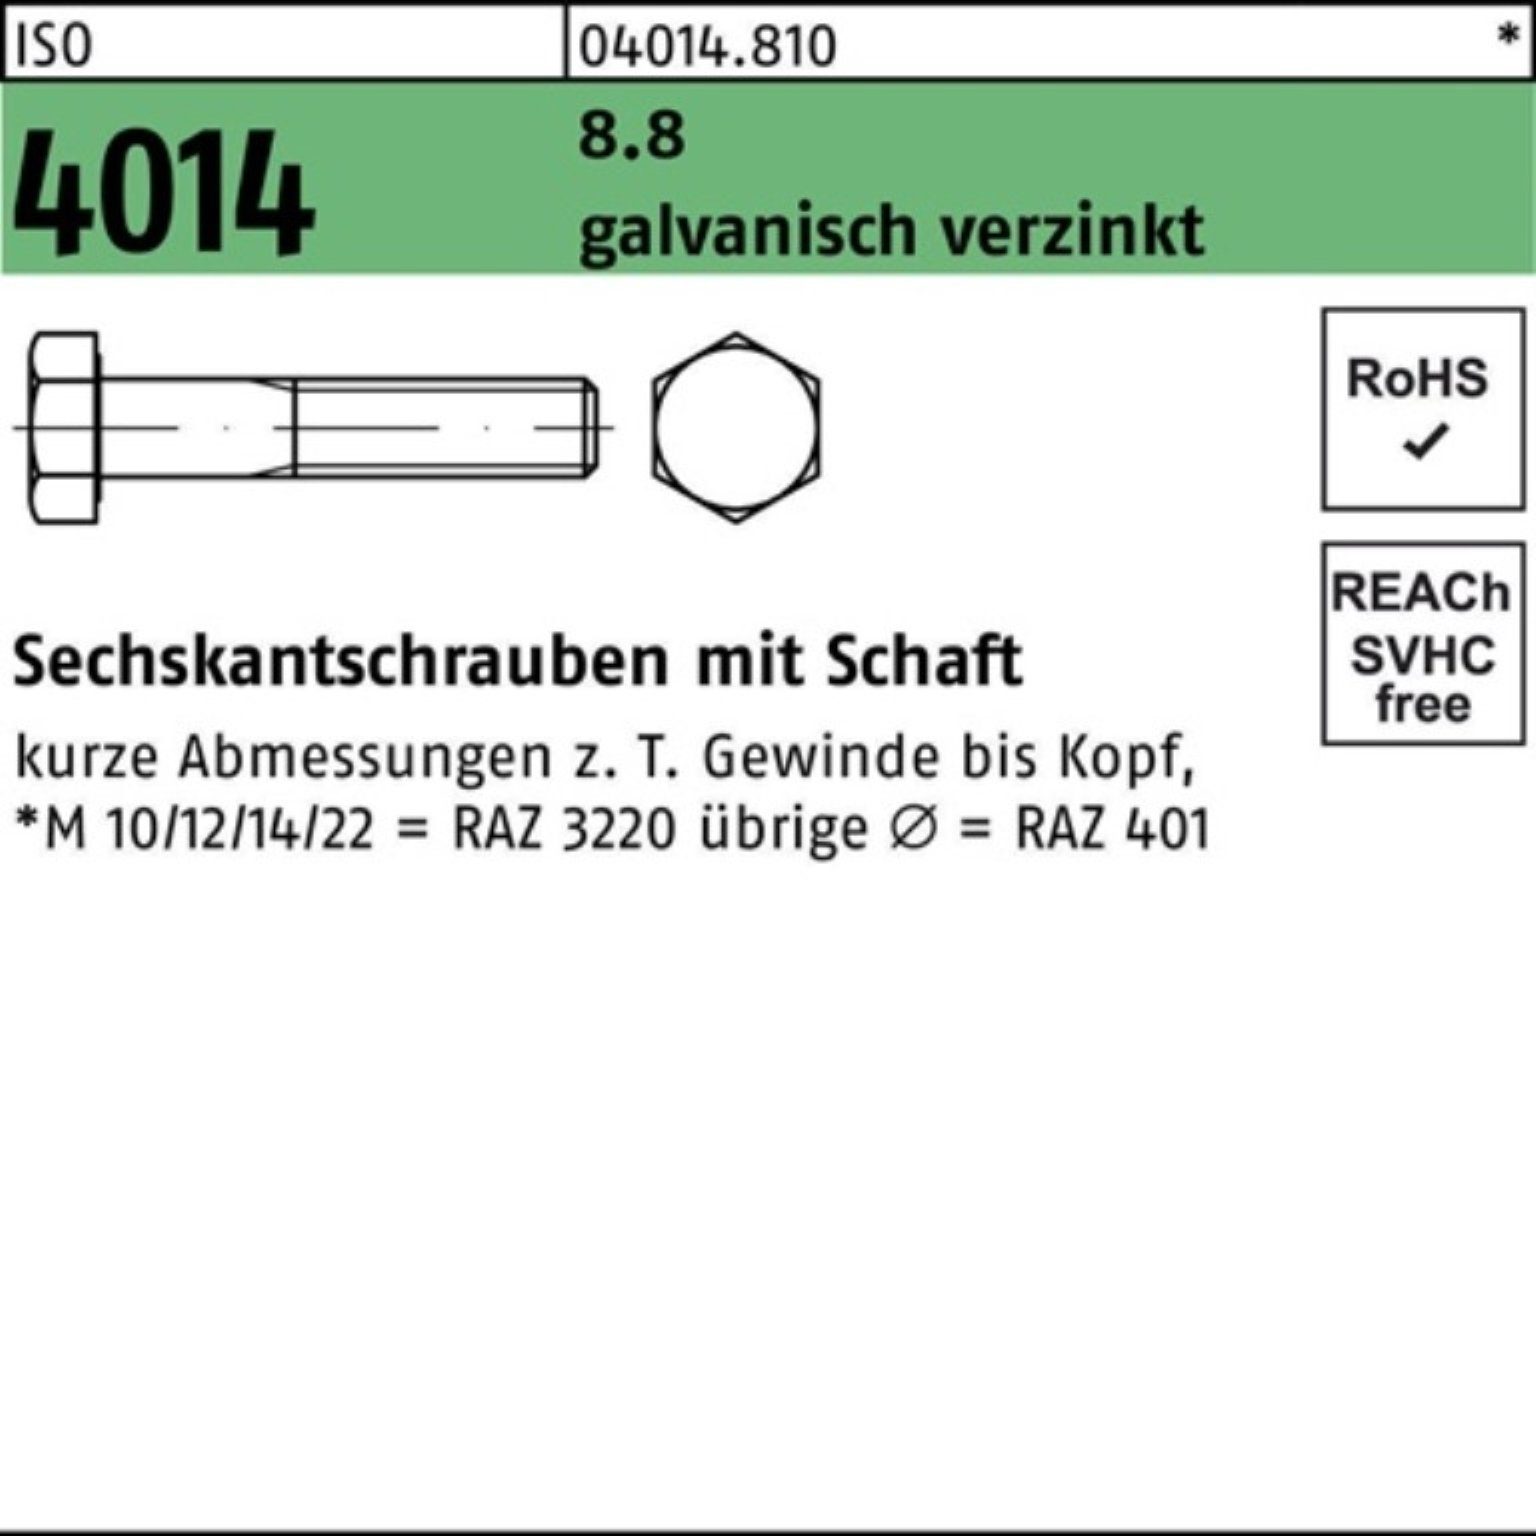 Schaft Bufab 4014 ISO galv.verz. 8.8 1 Sechskantschraube 100er M20x 210 Pack Sechskantschraube